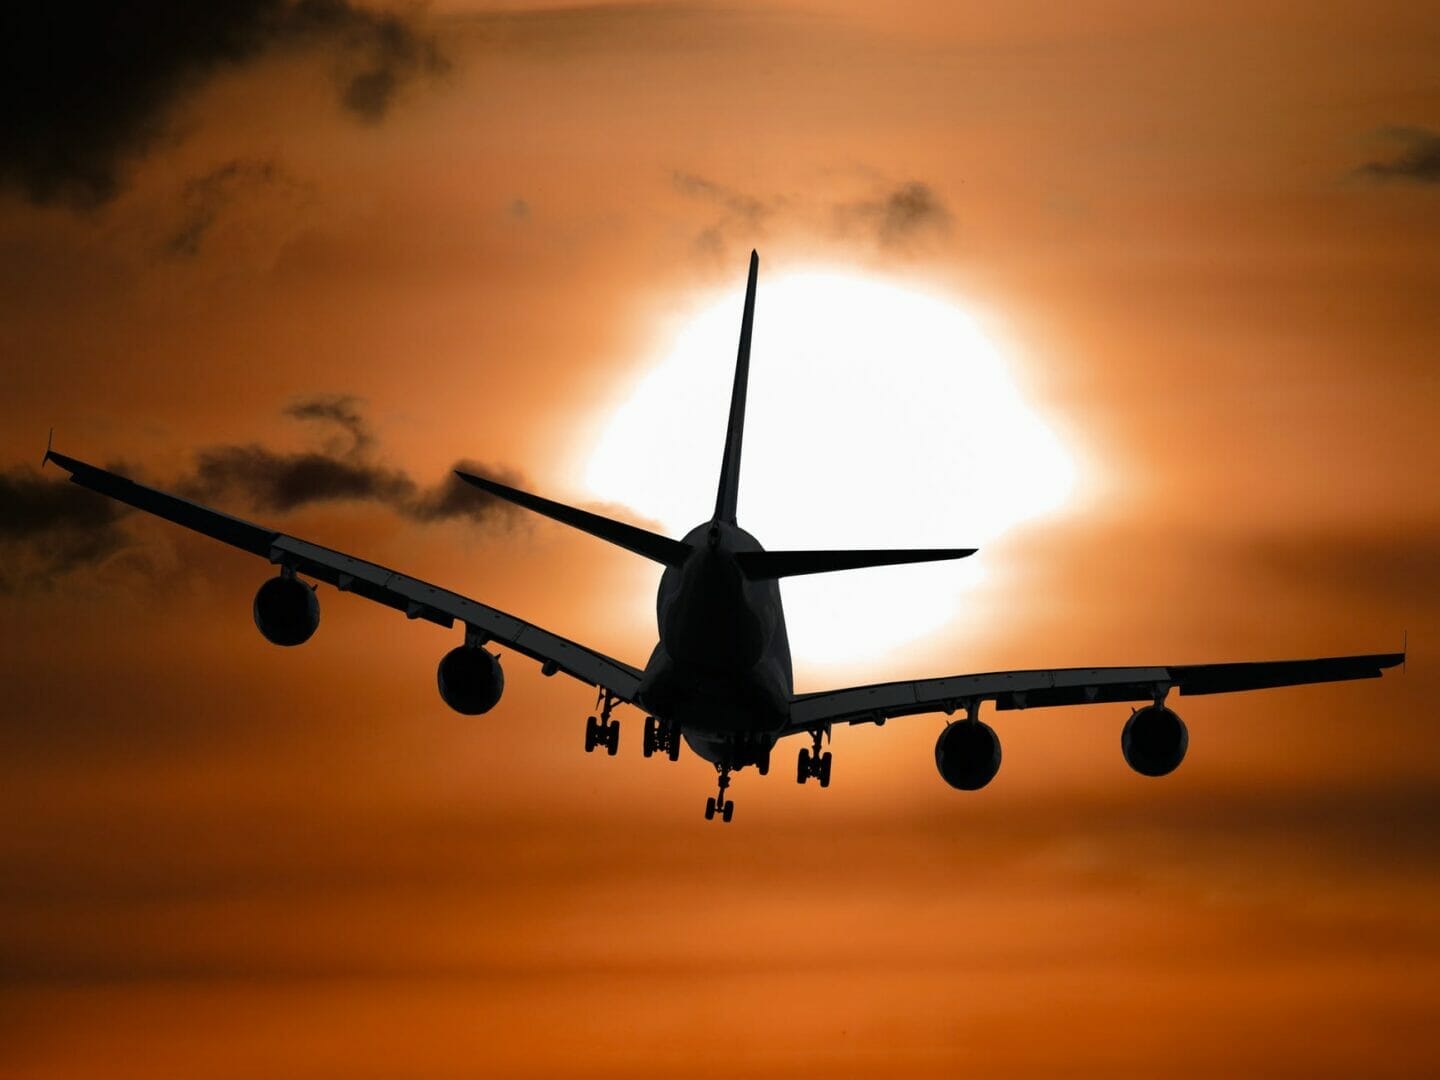 imagen de la sombra de un avión volando durante la puesta de sol - Reserve vuelos baratos para Europa 